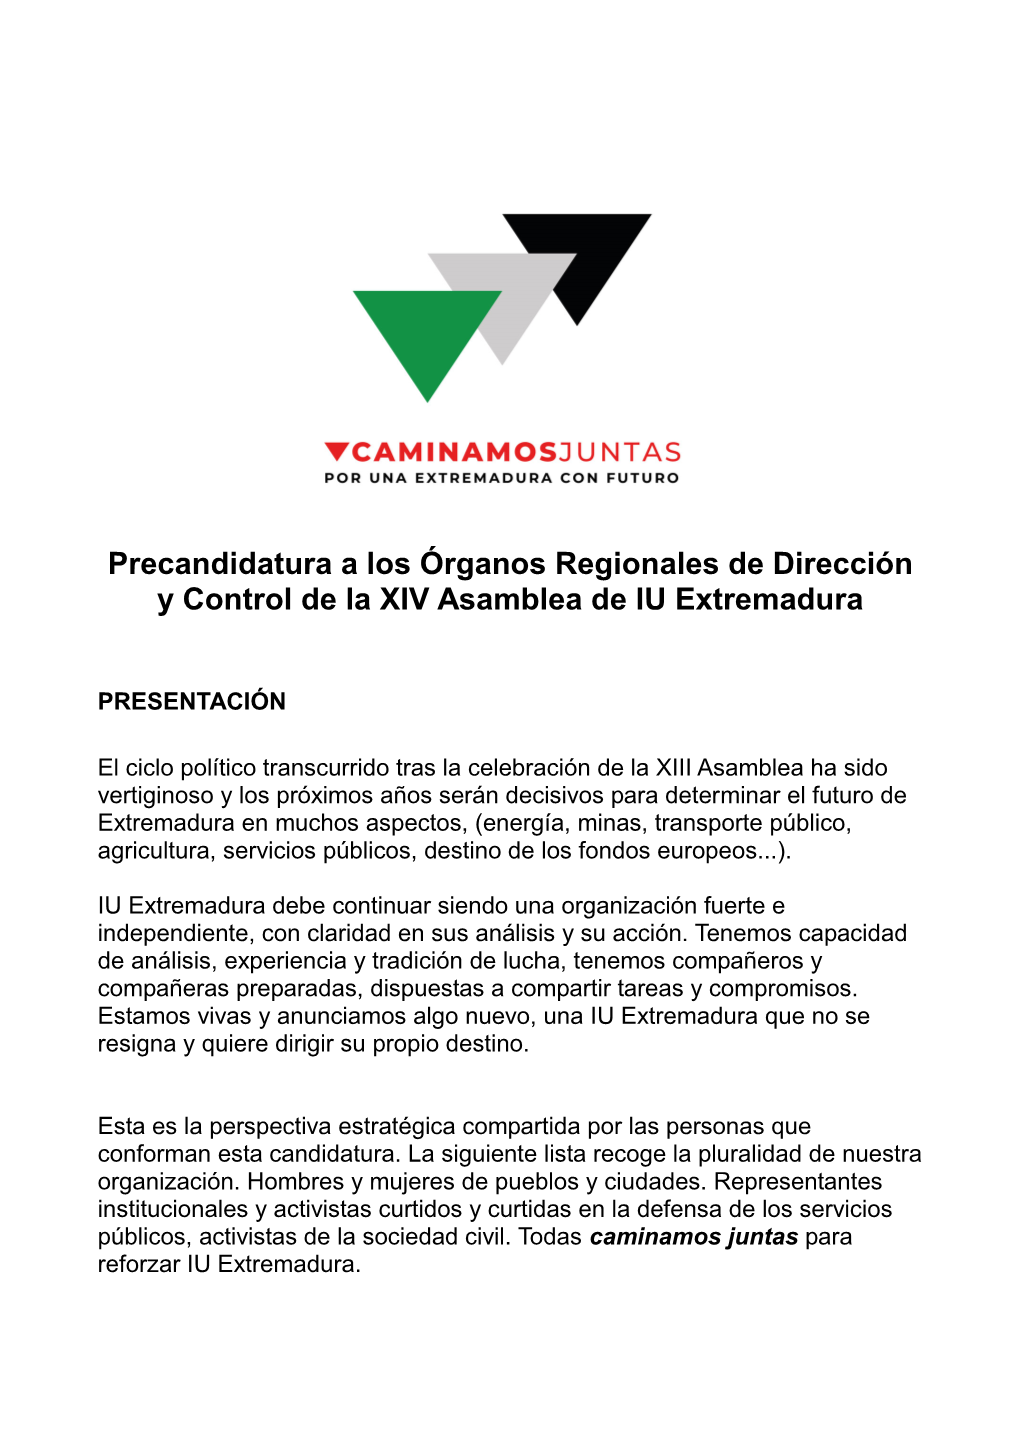 Precandidatura a Los Órganos Regionales De Dirección Y Control De La XIV Asamblea De IU Extremadura